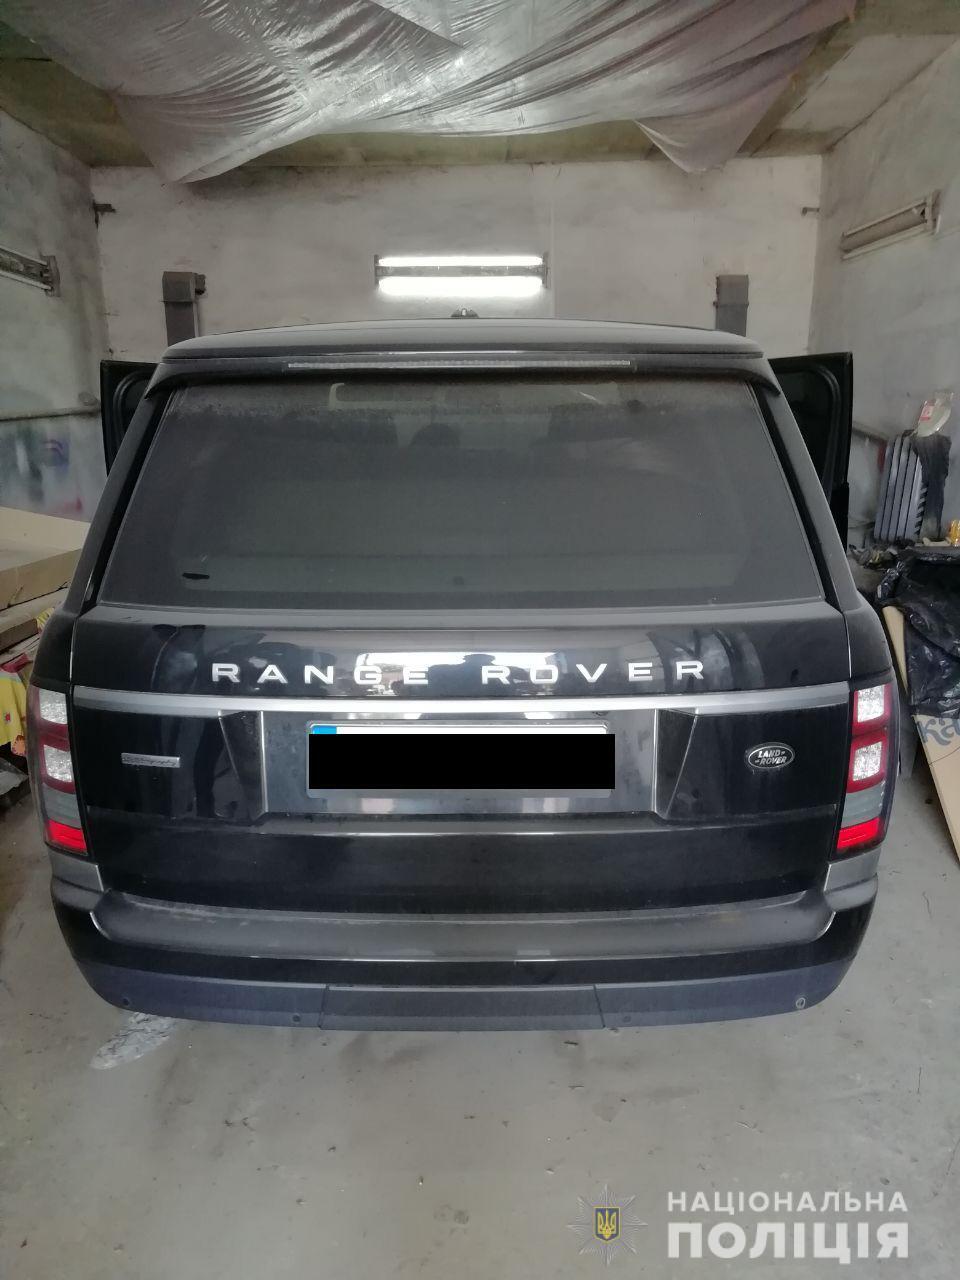 У рівненського підприємця на СТО виявили гранатомет, гранати, бурштин та розшукуваний «Range Rover»